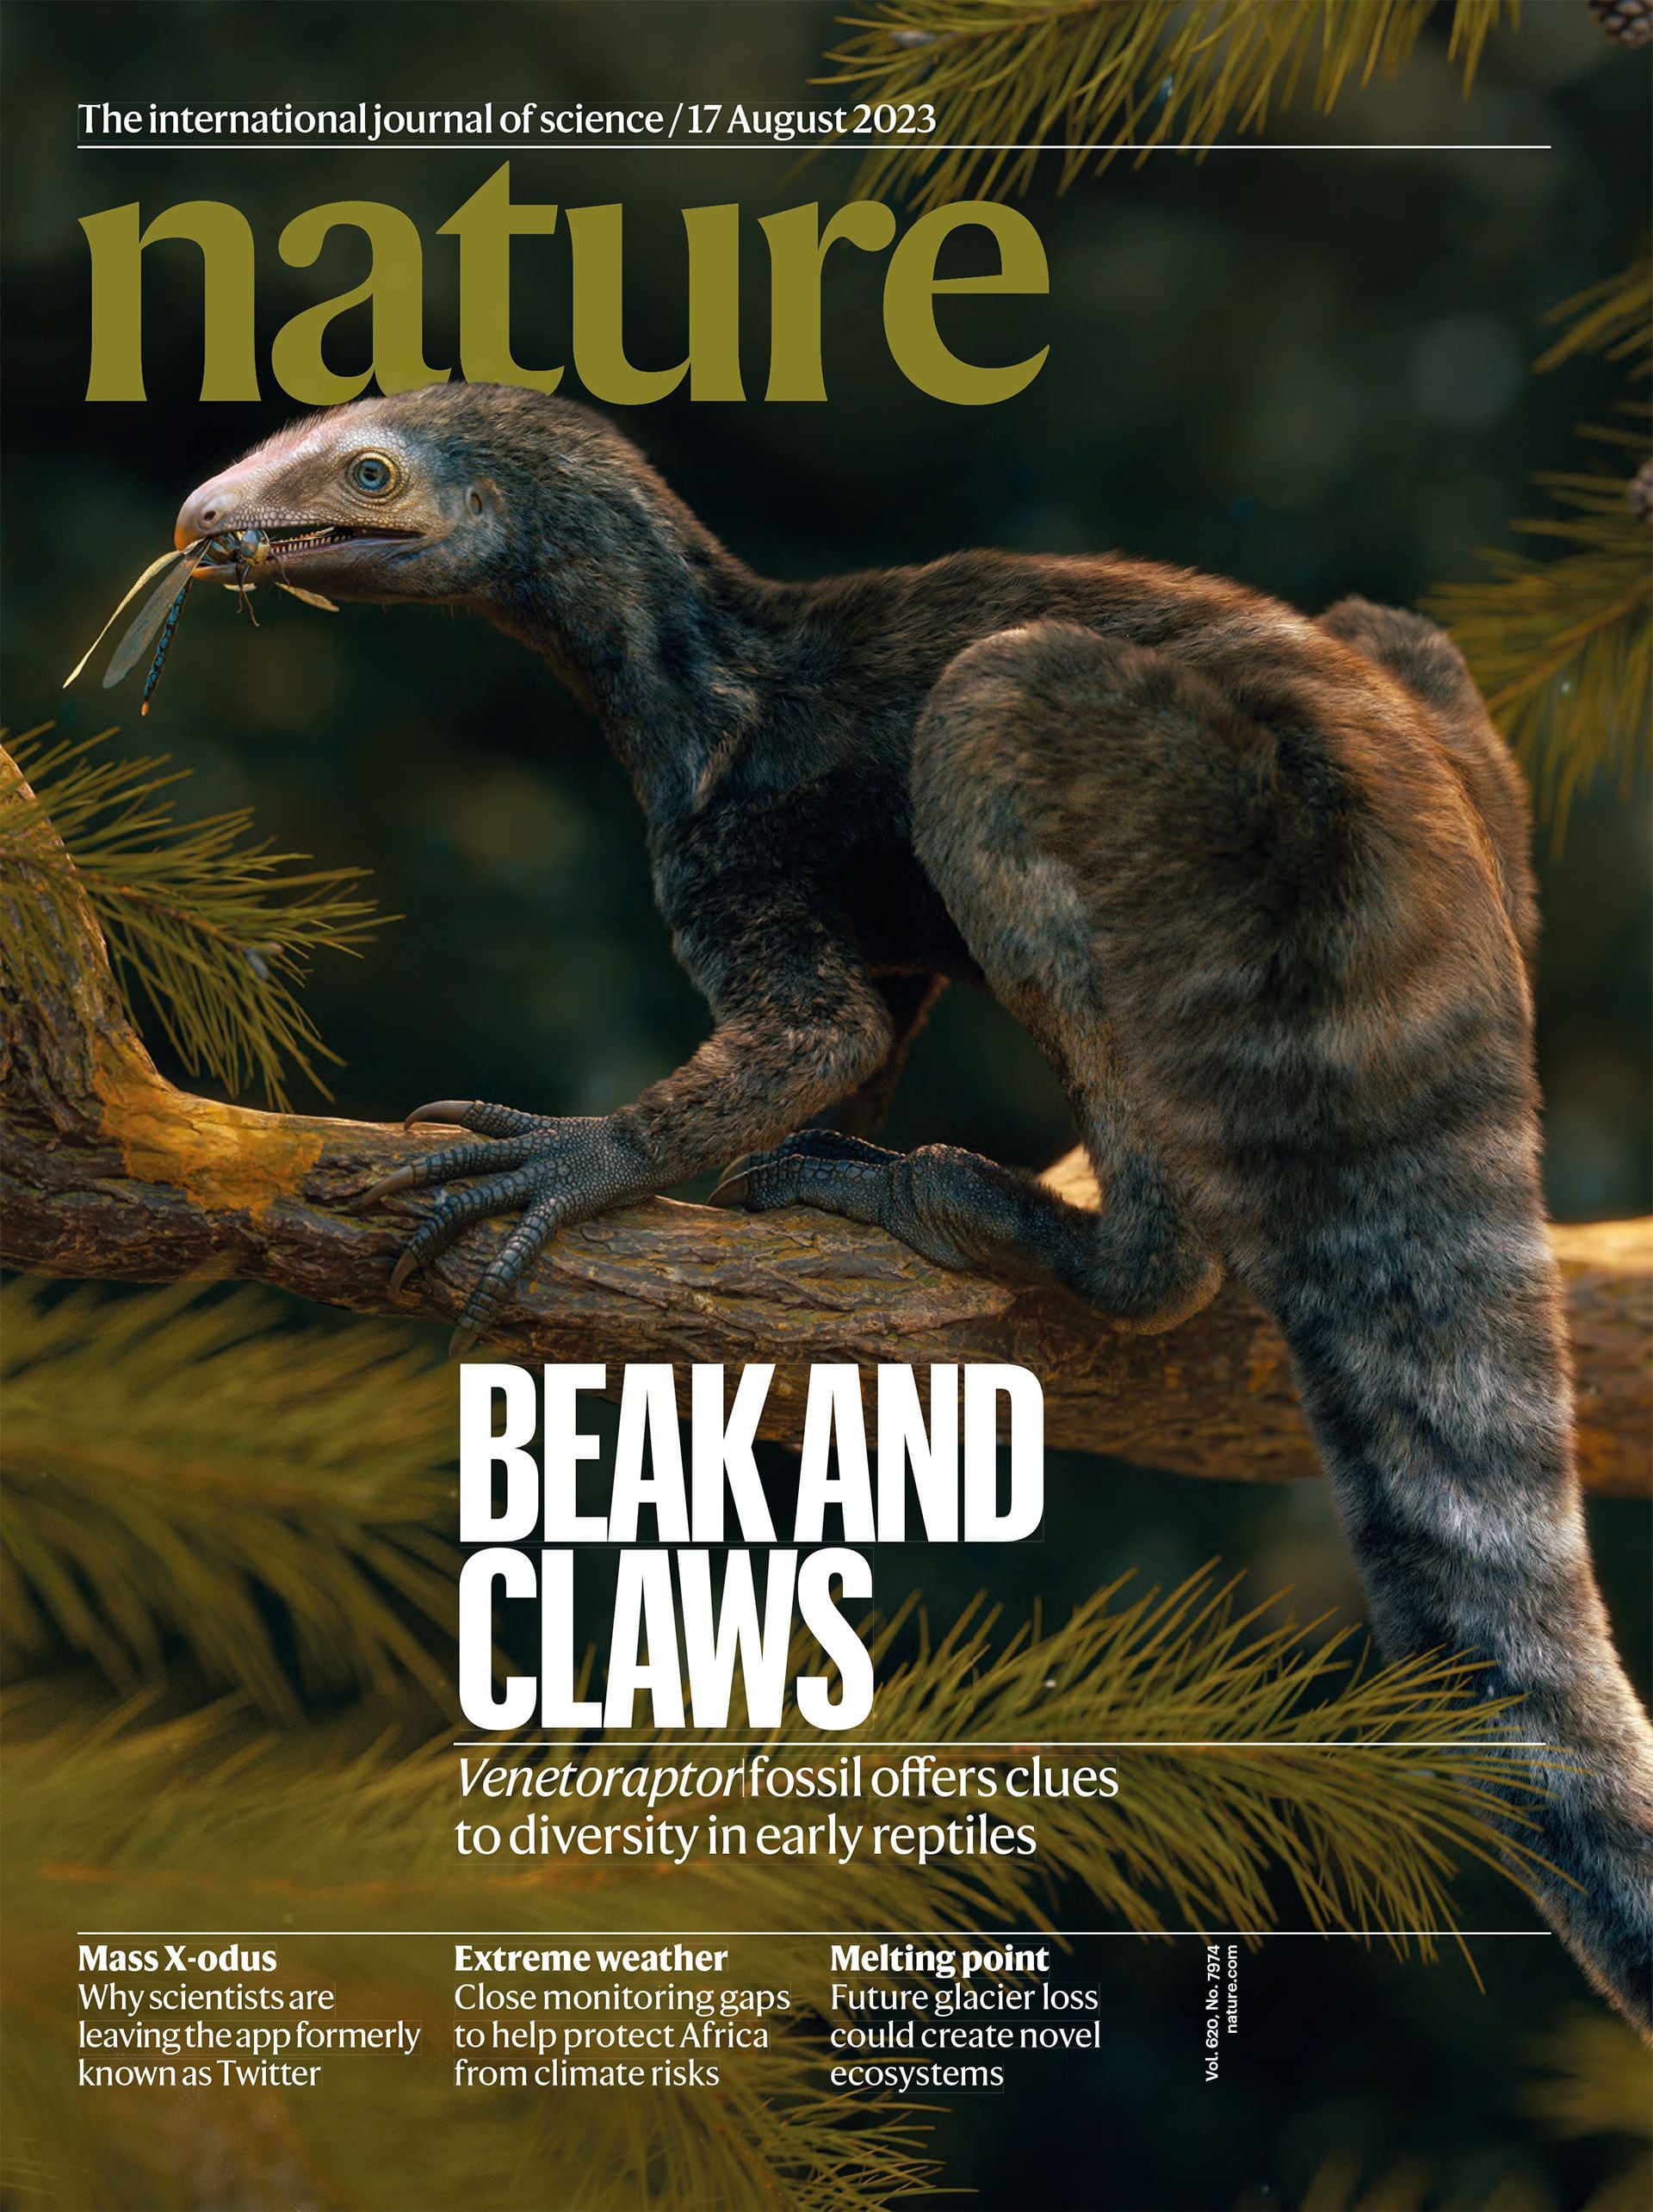 La tapa de Nature del 16 de agosto destaca el hallazgo de Venetoraptor. Es una de las más prestigiosas revistas científicas a nivel mundial. Fue fundada en 1869/Nature
